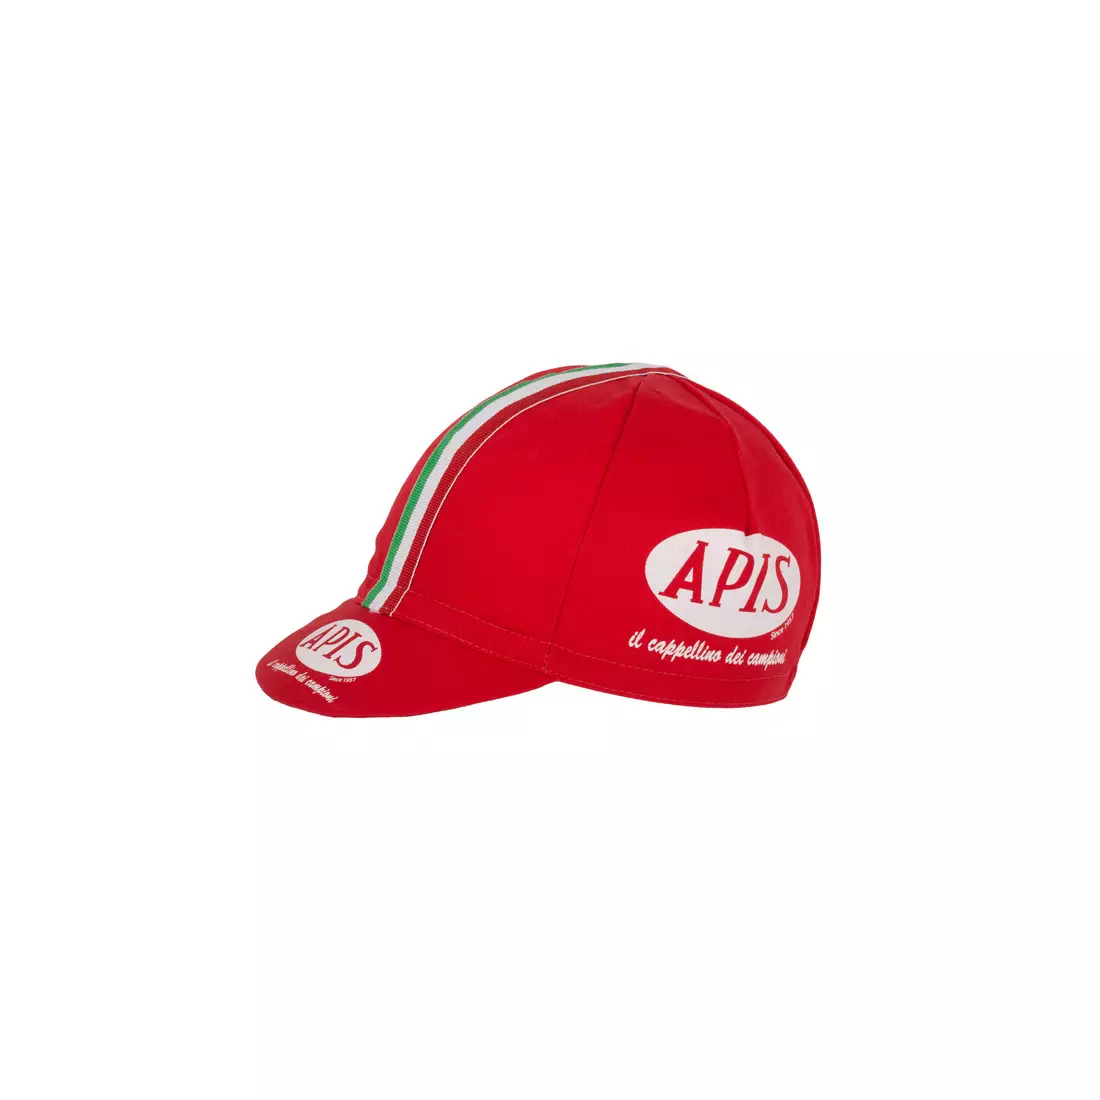 Apis Profi cycling cap APIS Il cappellino dei campioni RED